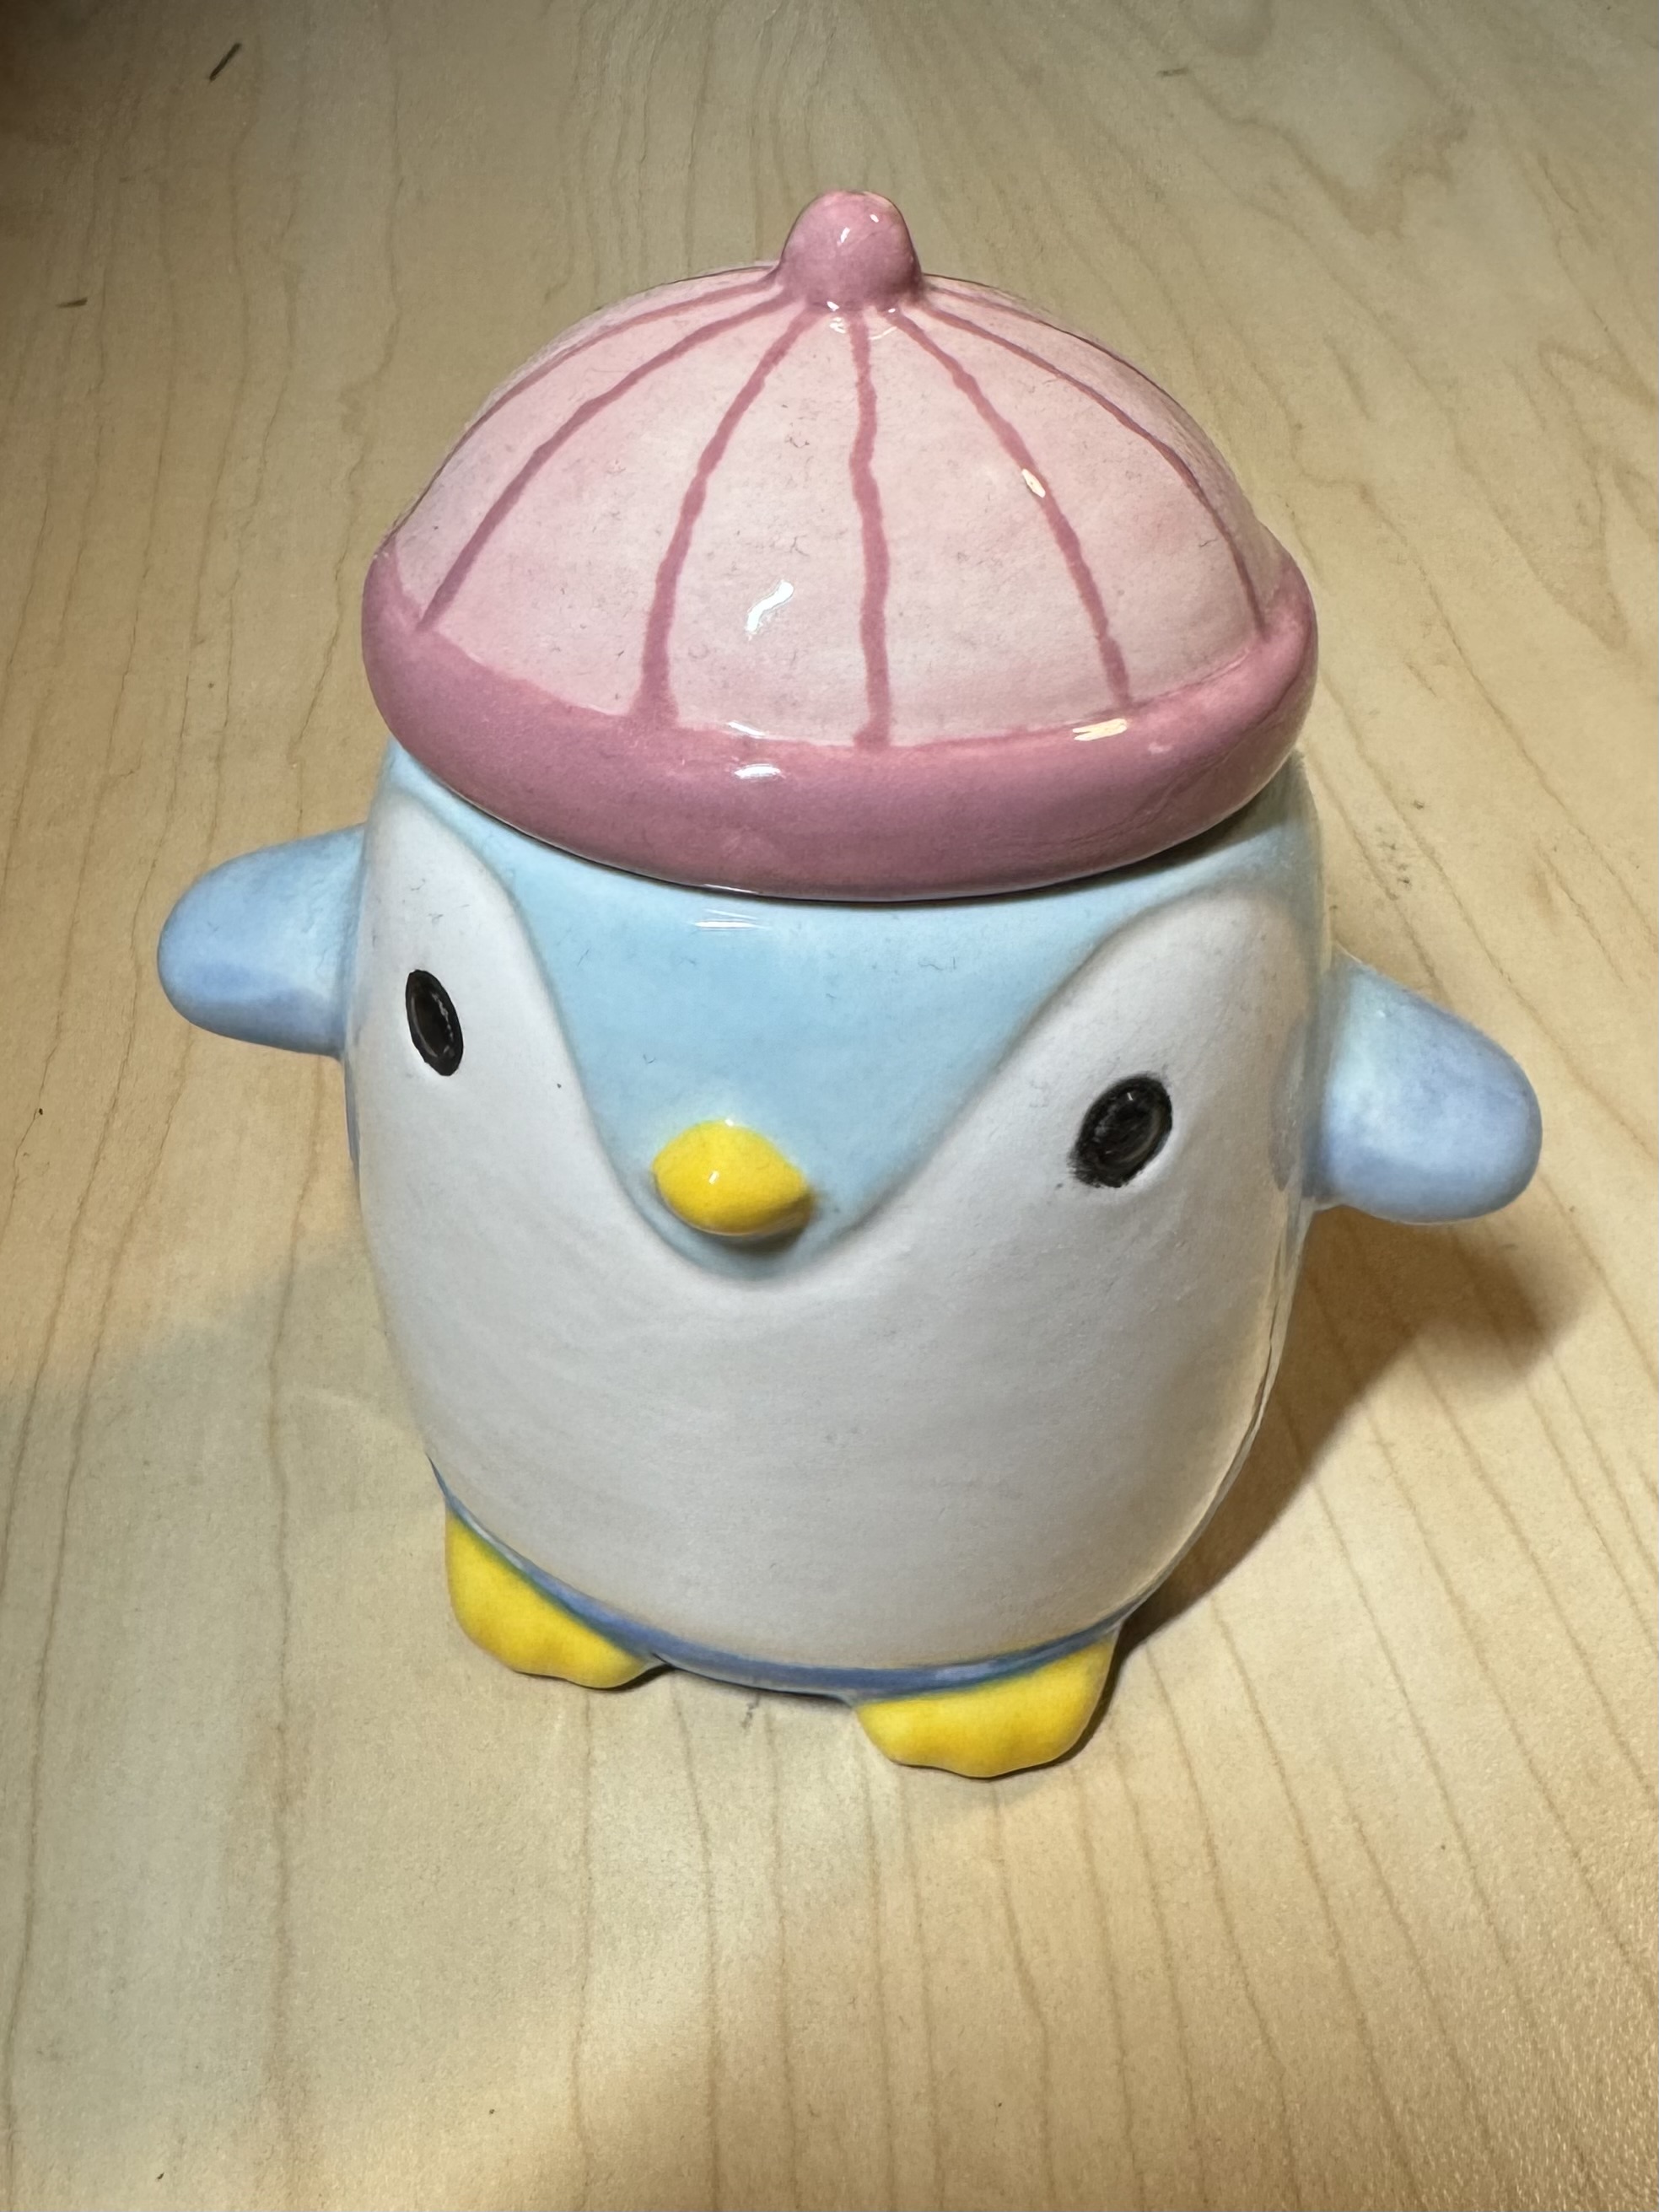 A ceramic penguin